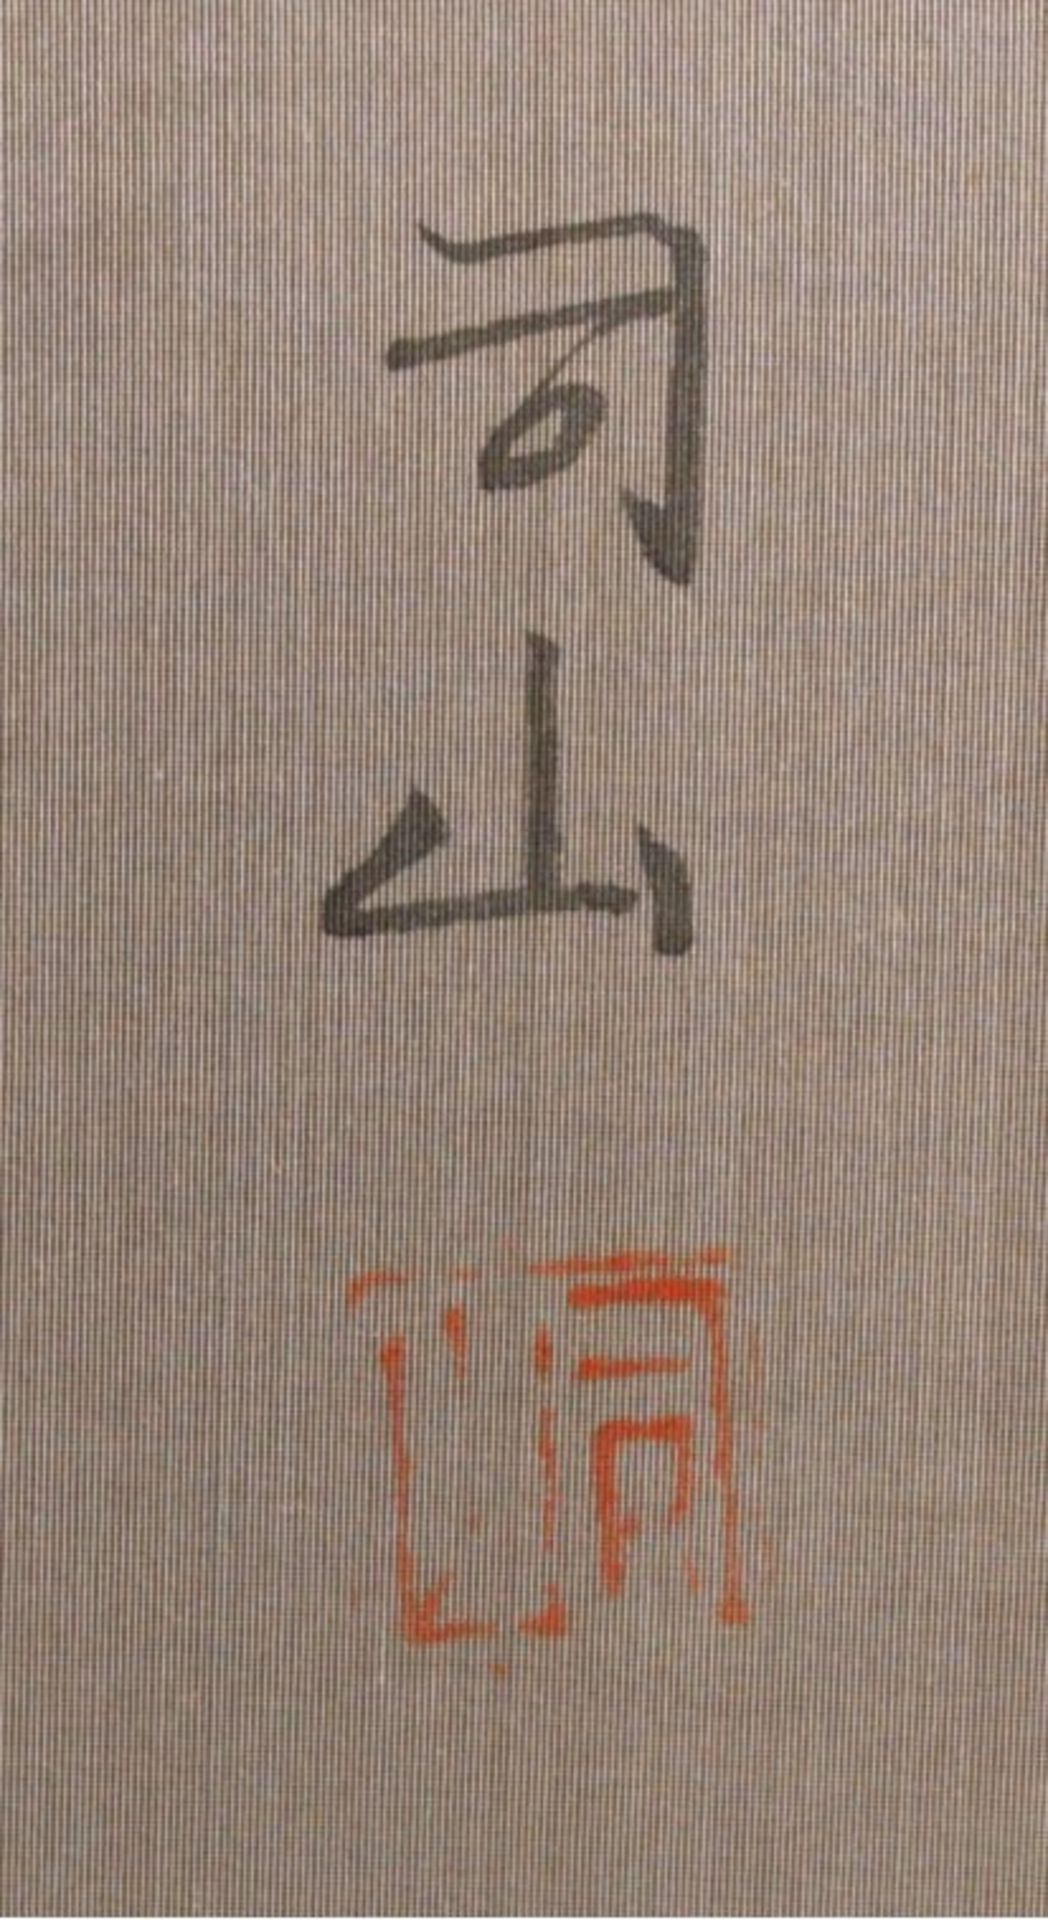 Chinesisches WandbildSehr feine Landschafstmalerei auf Seide, Stempelmarke undSignatur, Klappbild, - Image 4 of 4